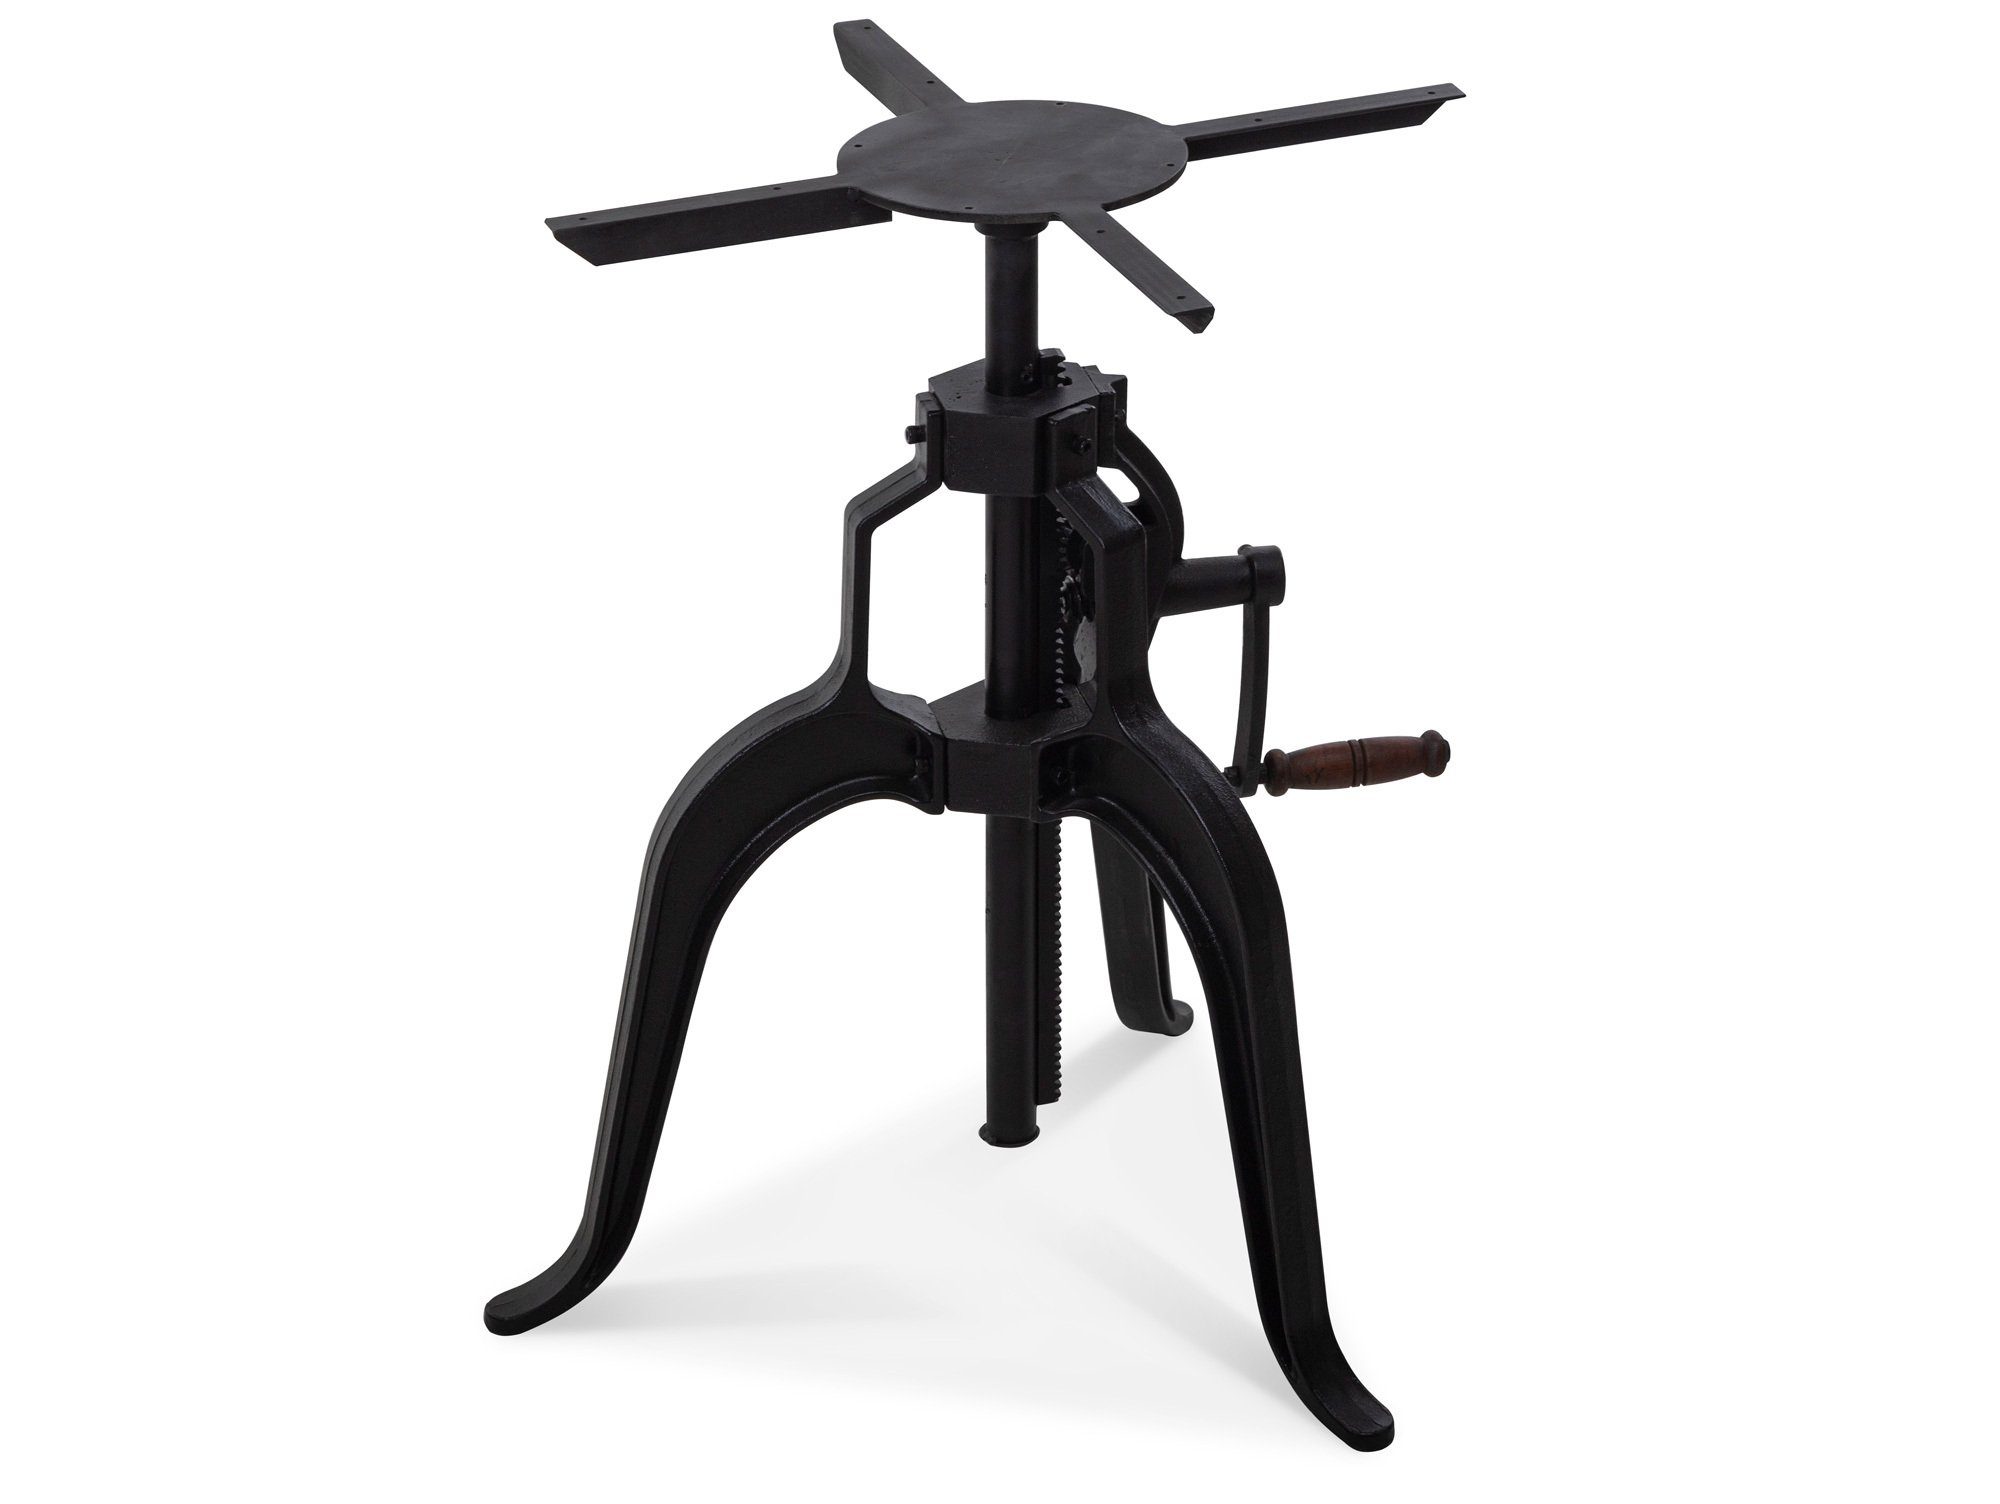 Moebel-Eins Tischgestell, Höhenverstellbares Tischgestell für Esstisch / Bartisch, Material Gusseisen, schwarz, Höhe: 72-120 cm